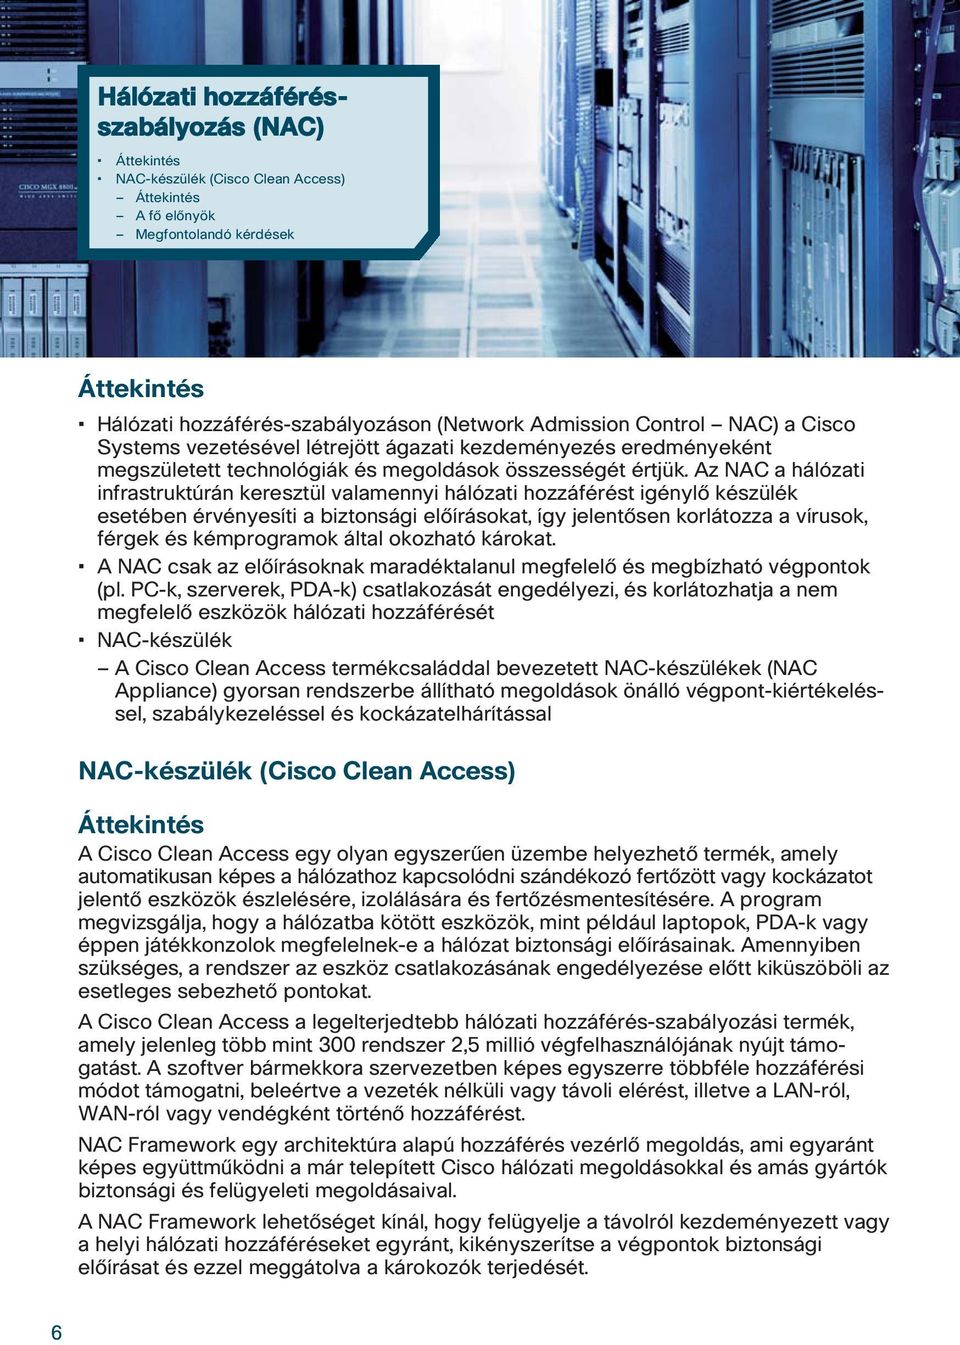 Az NAC a hálózati infrastruktúrán keresztül valamennyi hálózati hozzáférést igénylô készülék esetében érvényesíti a biztonsági elôírásokat, így jelentôsen korlátozza a vírusok, férgek és kémprogramok